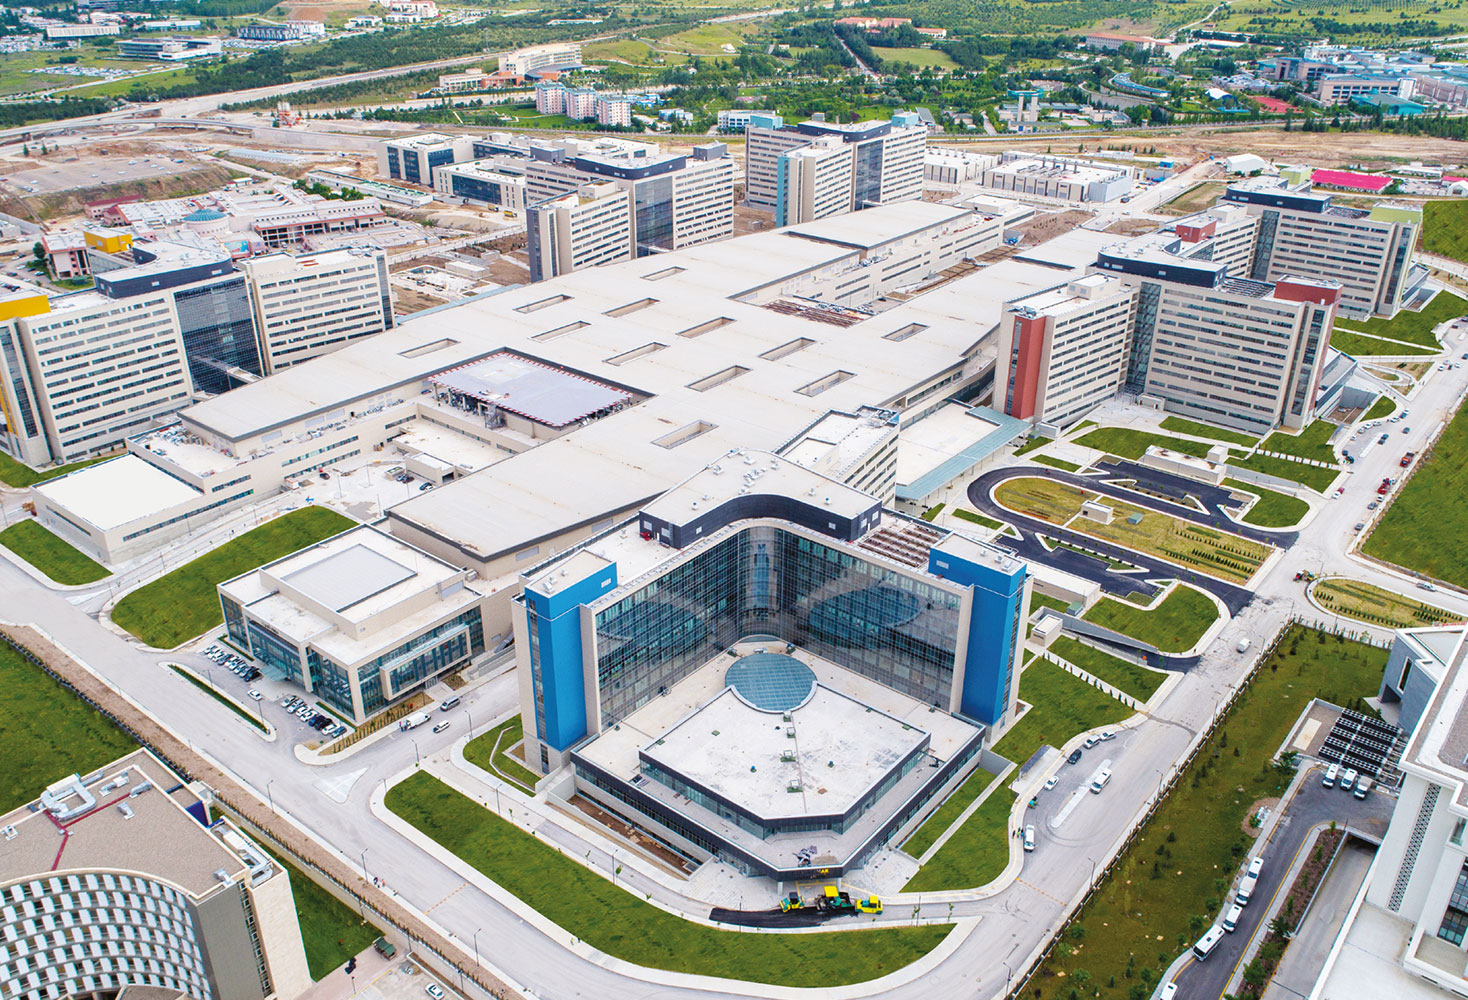 Dhjetë spitalet më të mëdhenj në botë